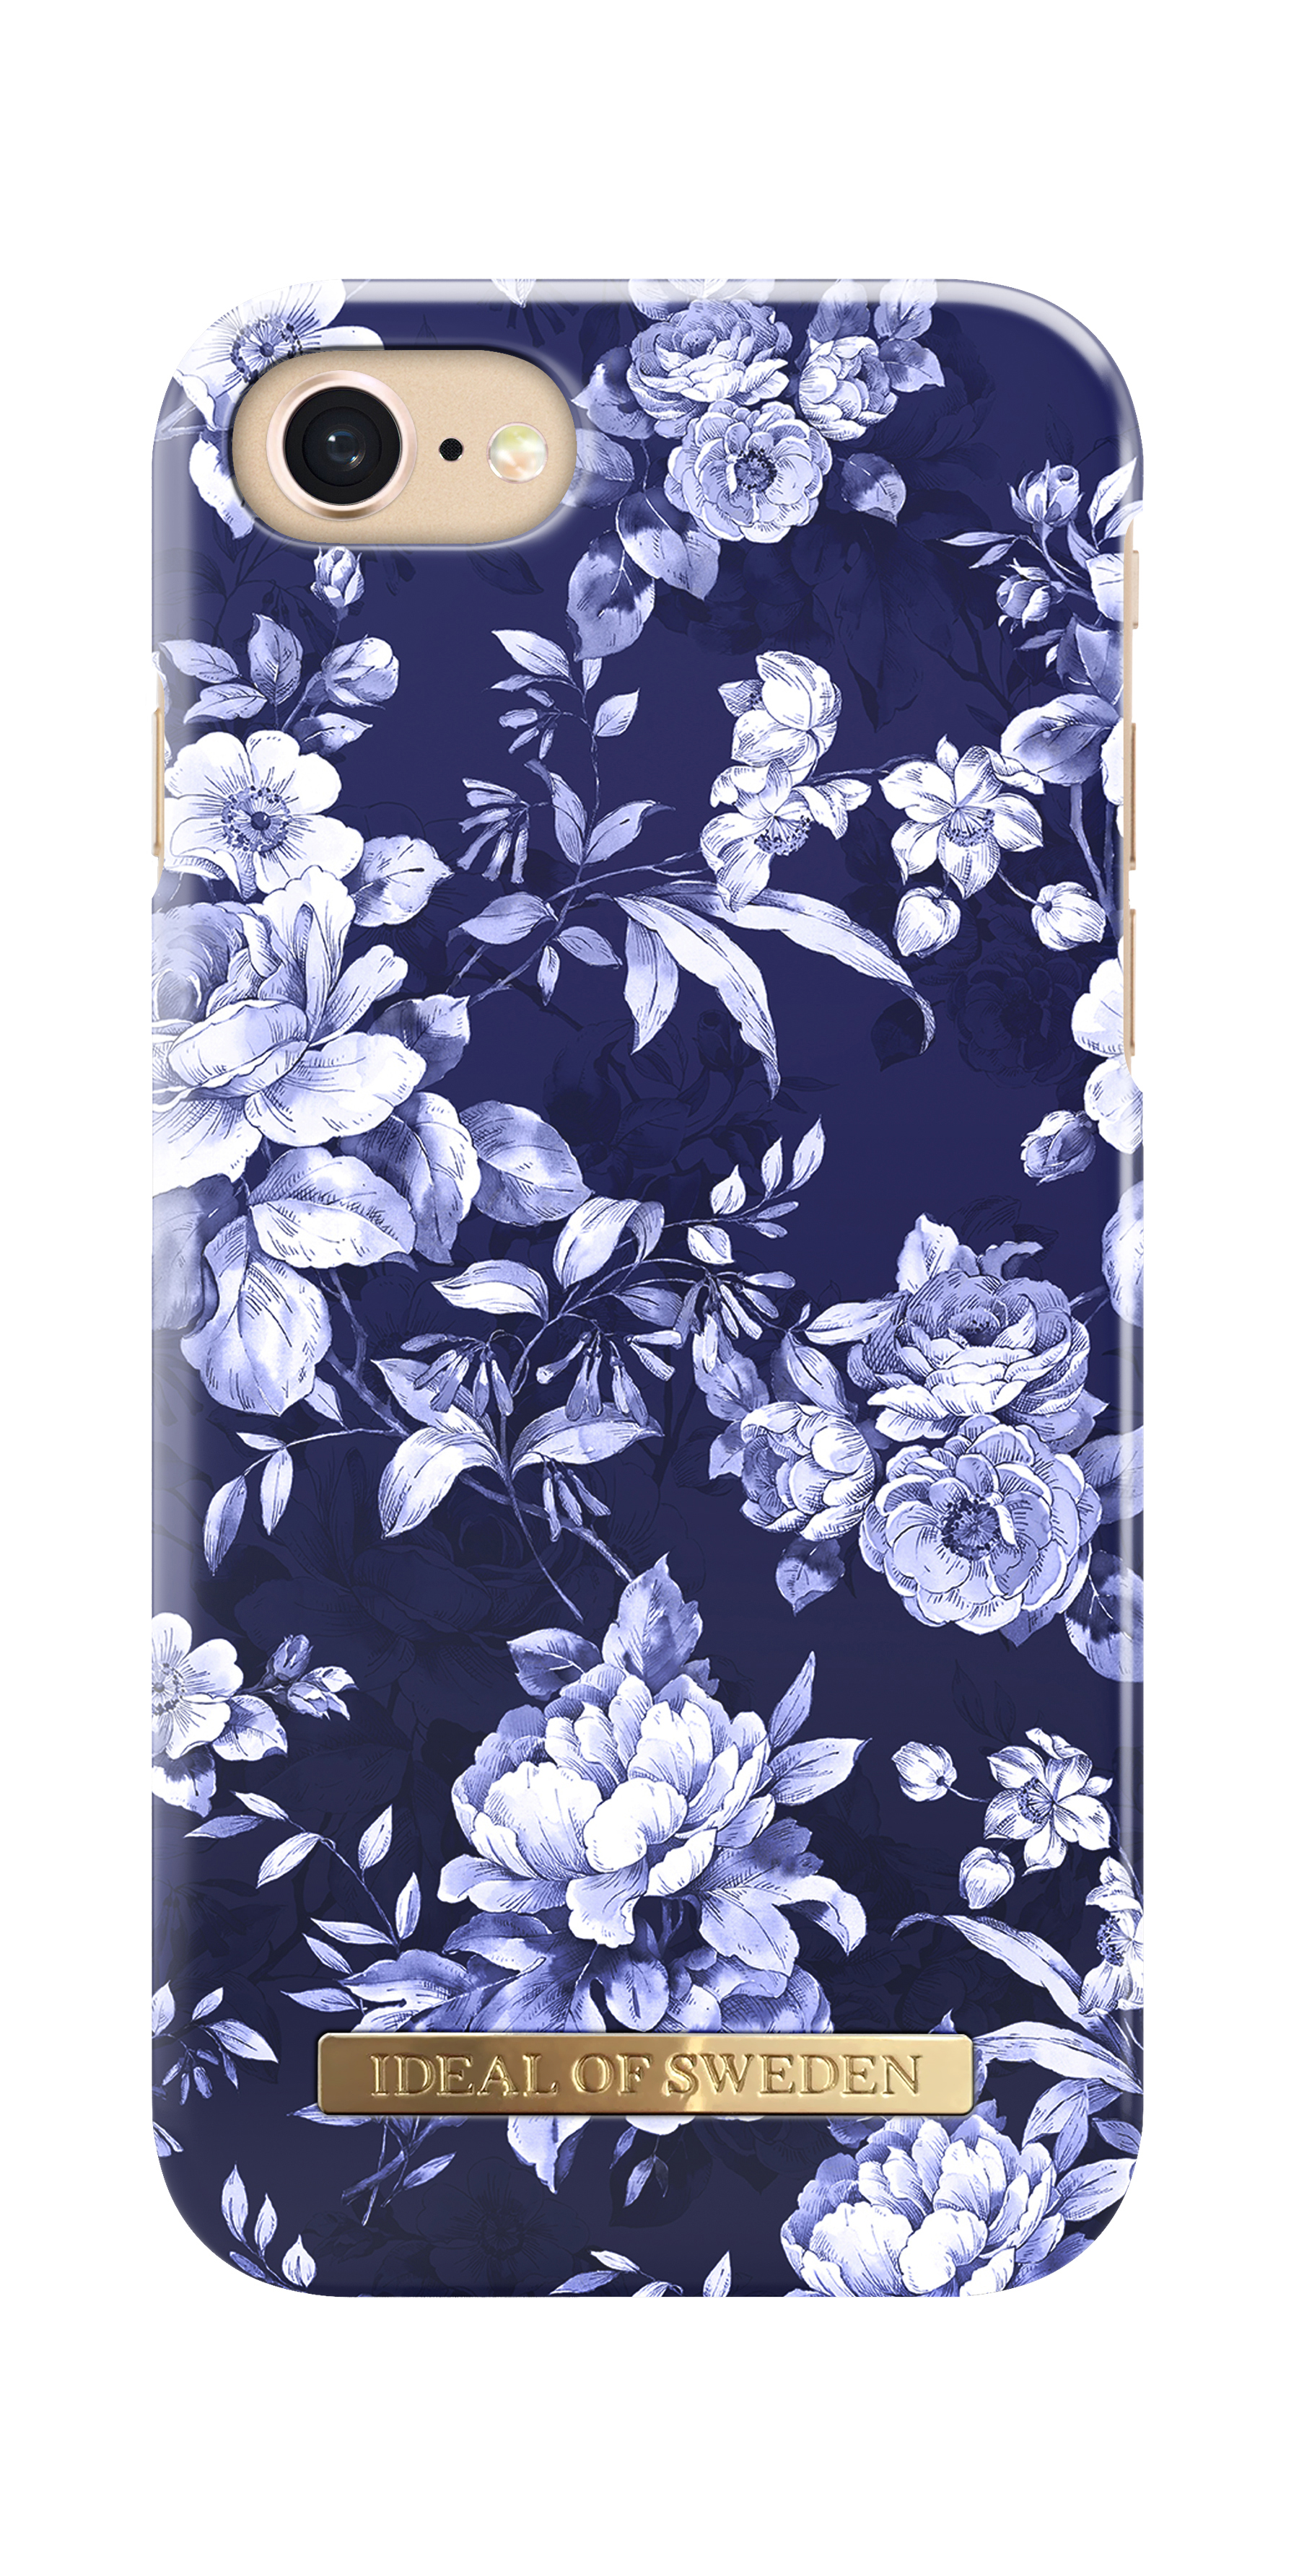 IDEAL iPhone Bloom, Bloom Sailor OF 7, Apple, Blue SWEDEN Backcover, Sailor Blue